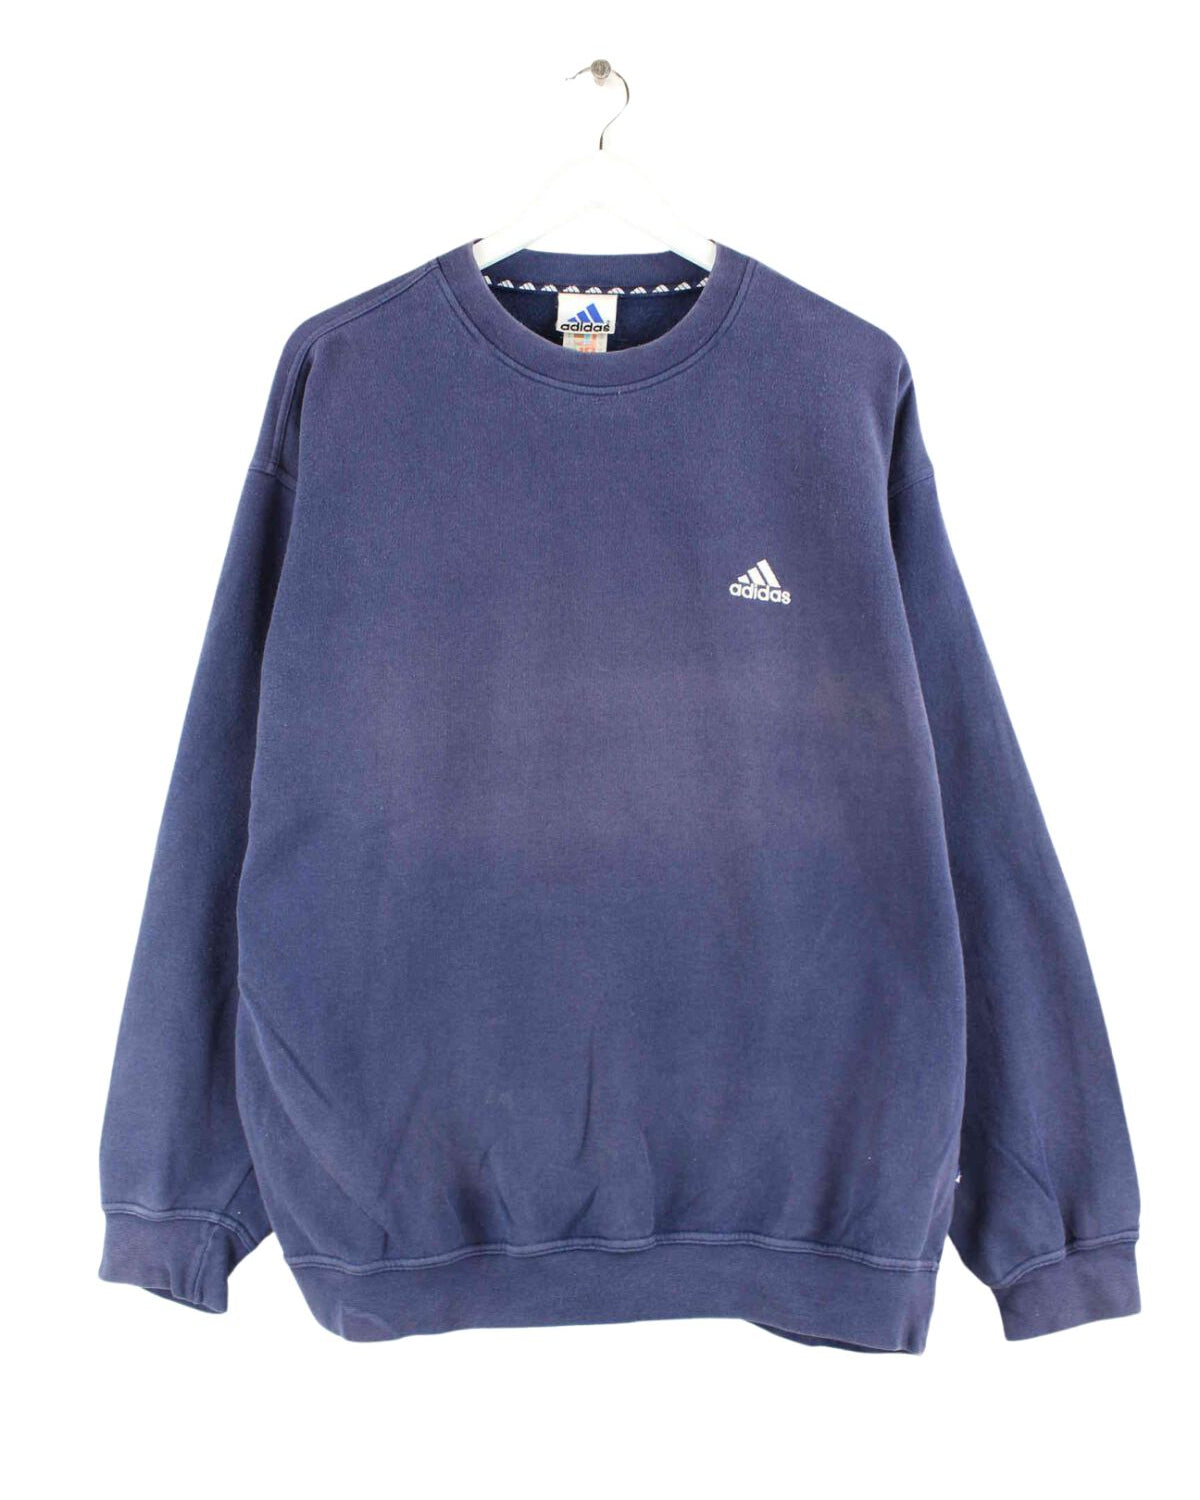 Adidas 90s Vintage Basic Sweater Blau XL (front image)